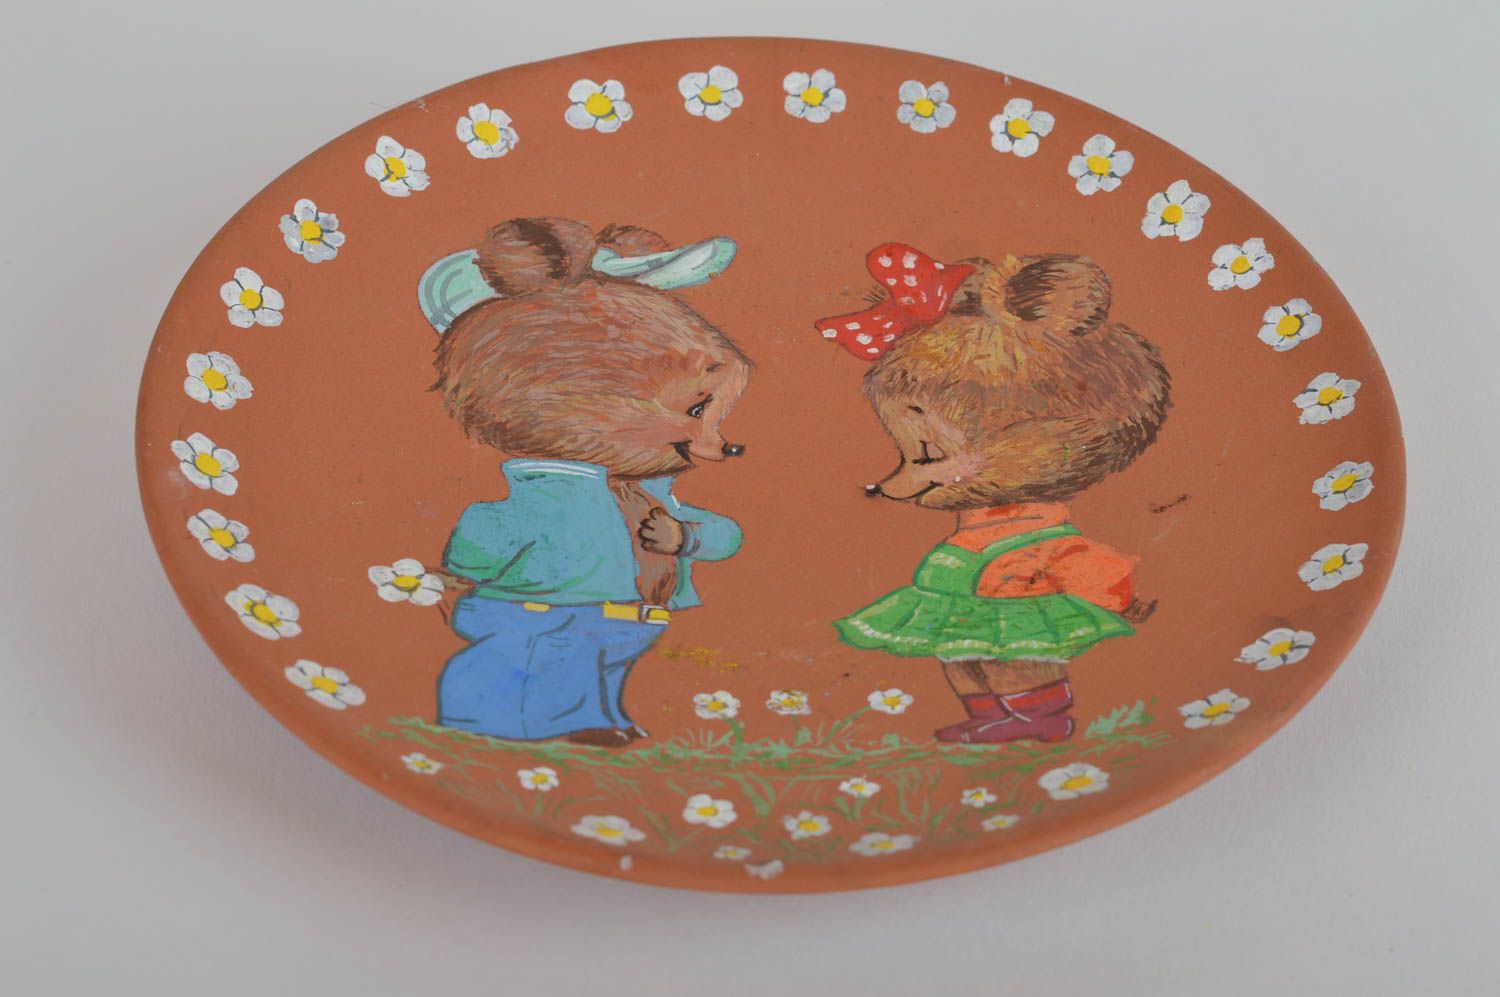 Тарелка из глины расписанная акриловыми красками с рисунком мишек ручной работы фото 2